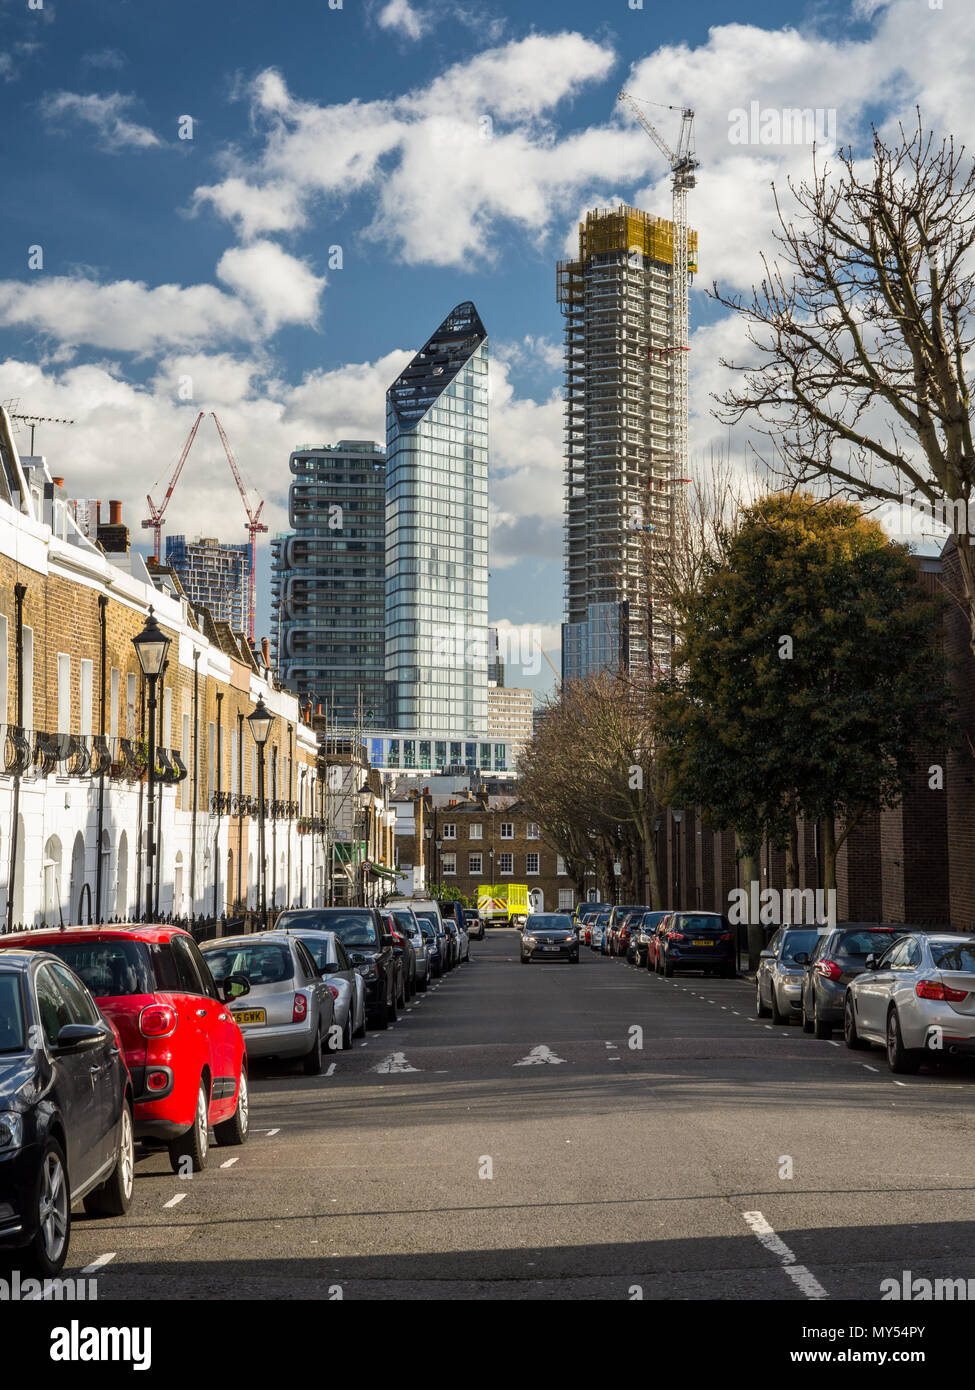 London, England, UK - Februar 12, 2018: ein Cluster von neuen Hochhaus Apartment Gebäuden steht mit dem Bau teilweise auf Stadt Straße durchgeführt, Witz Stockfoto